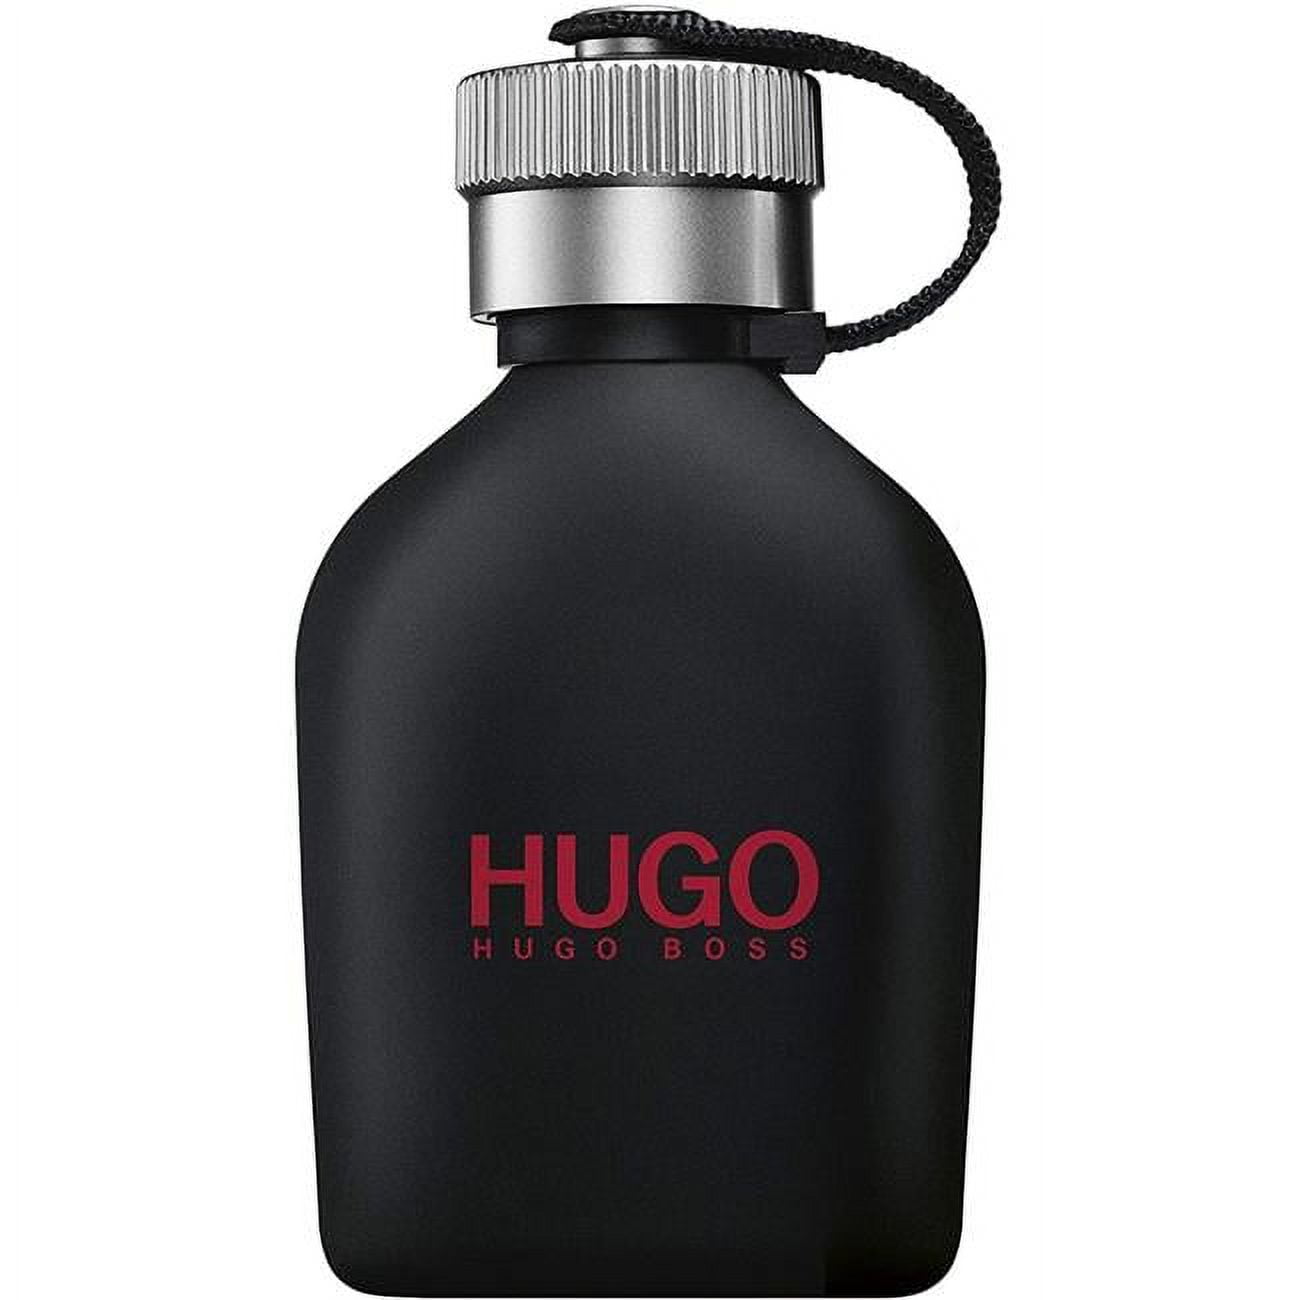 Hugo Boss HUJMTS25DE 2.5 oz Just Different & Boss Eau De Toilette Spray ...